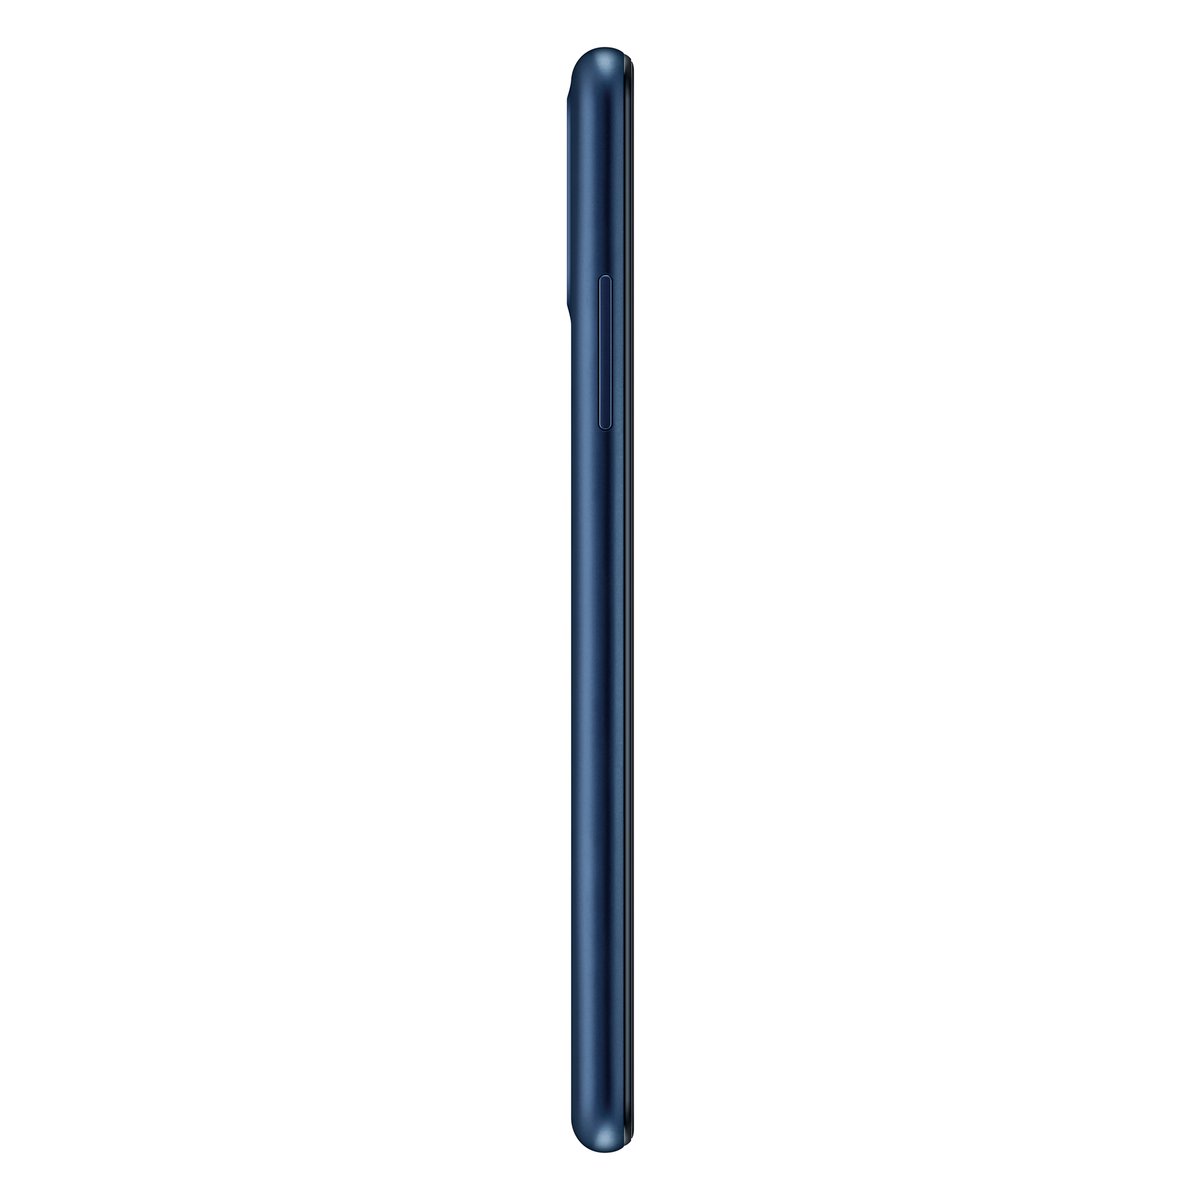 Samsung Galaxy A01 SMA015 16GB Blue